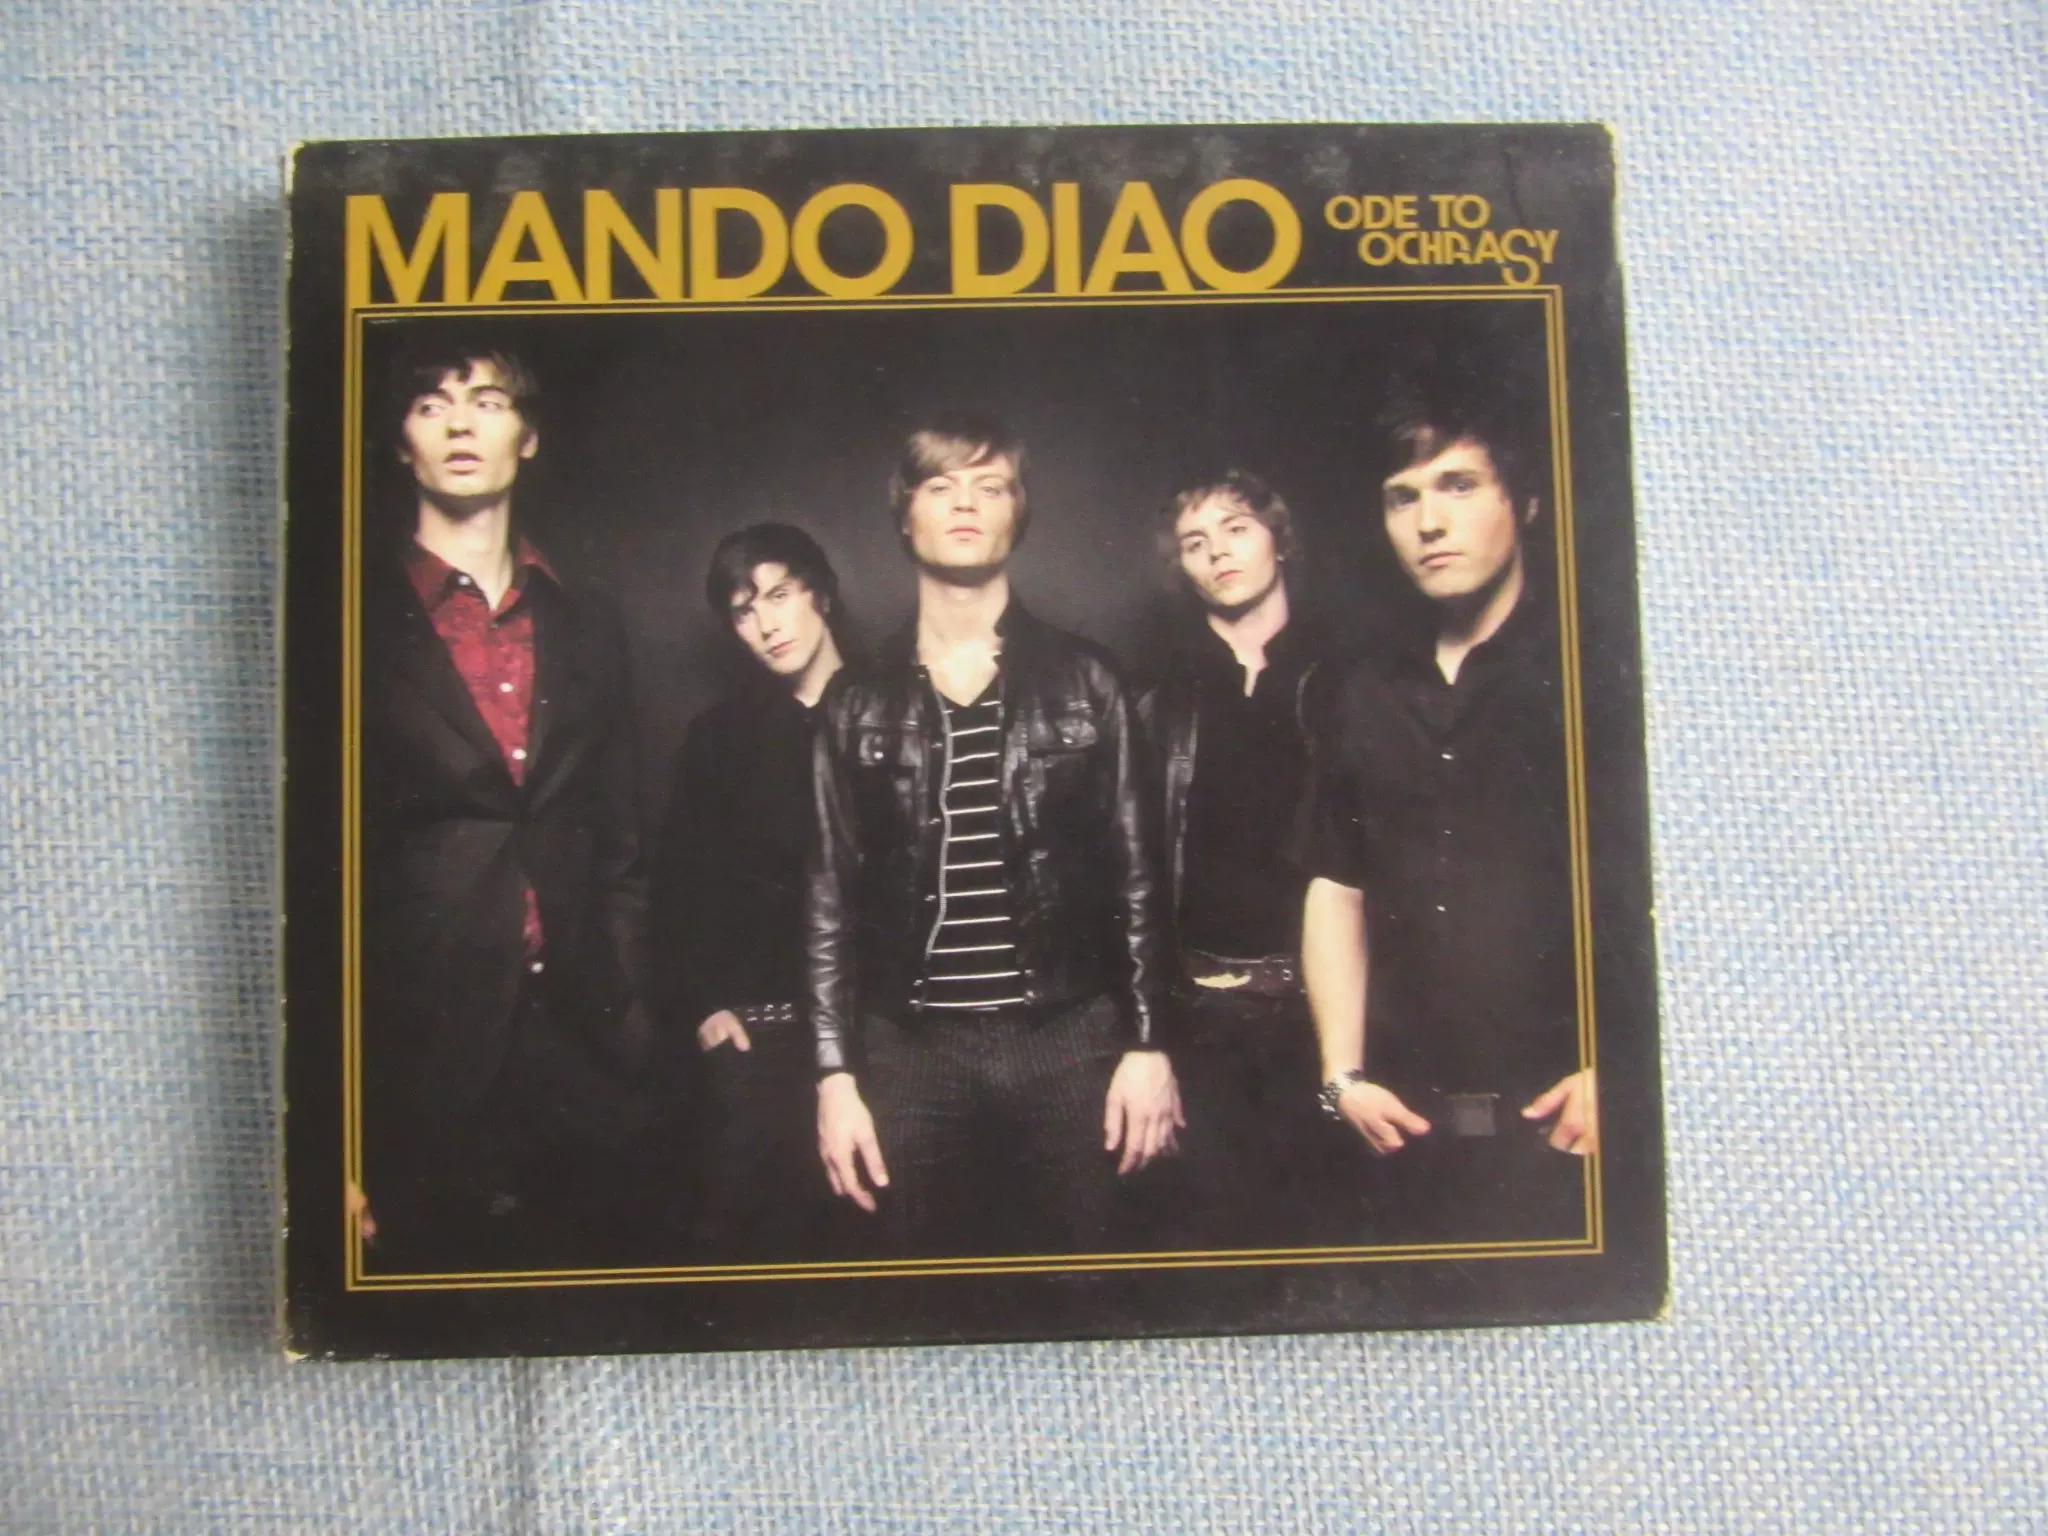 O版英式摇滚Mando Diao Ode To Ochrasy-Taobao